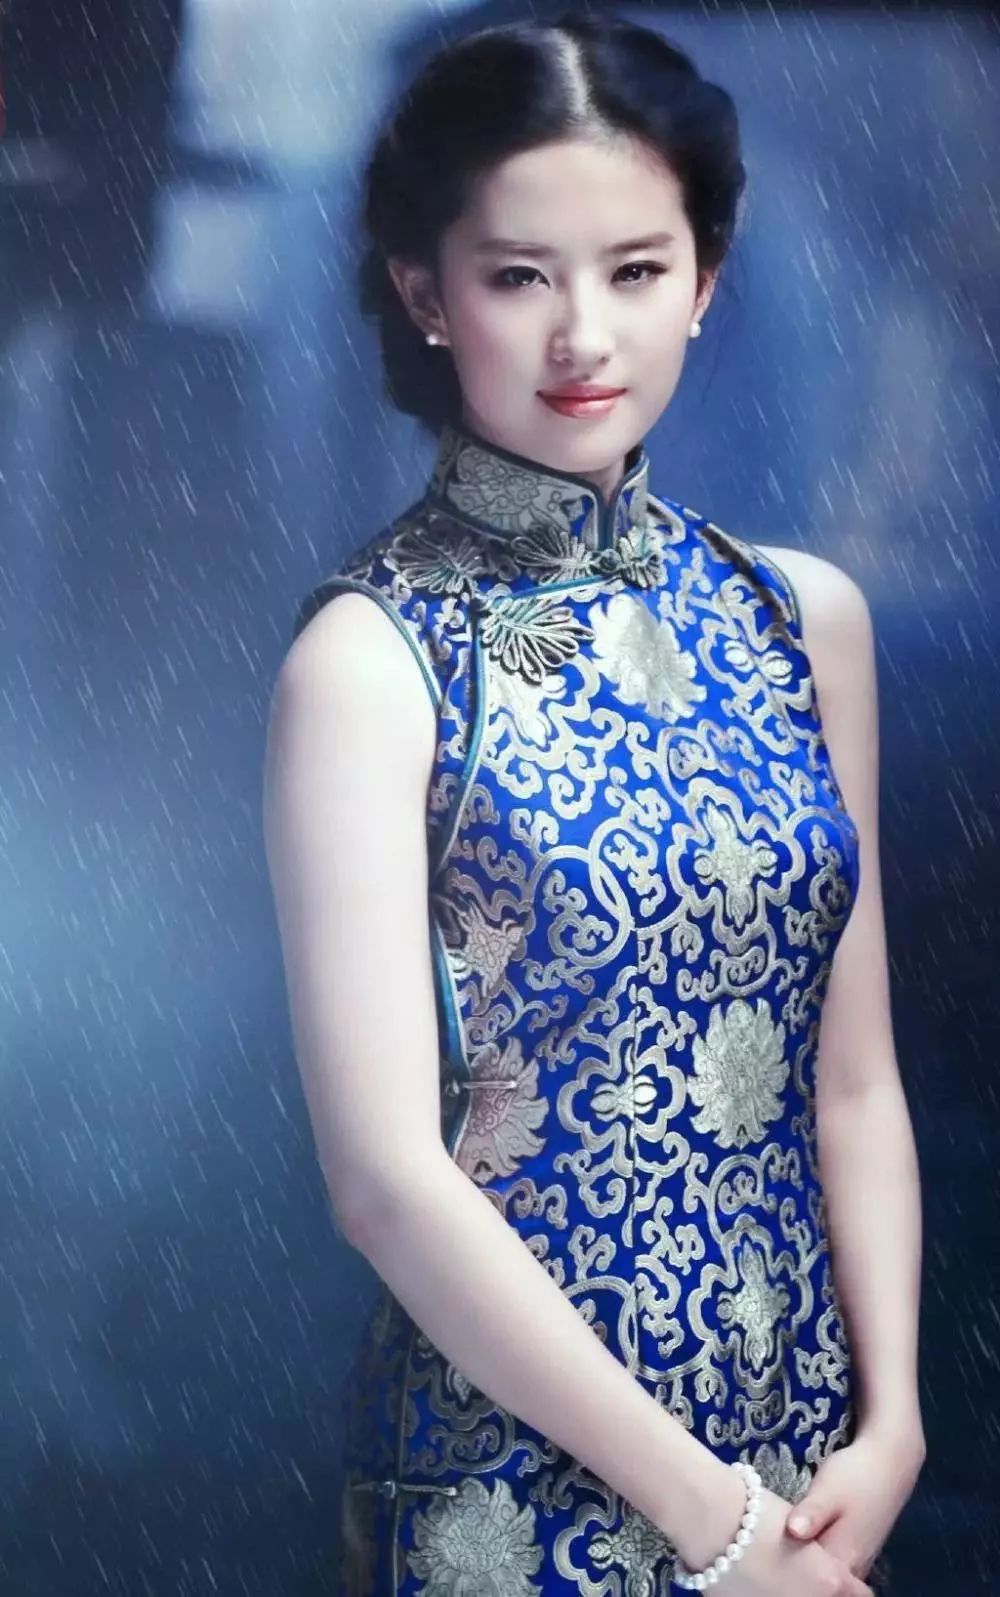 这身旗袍如果不是志玲姐姐穿,估计会很low,但是林志玲穿在身上显得